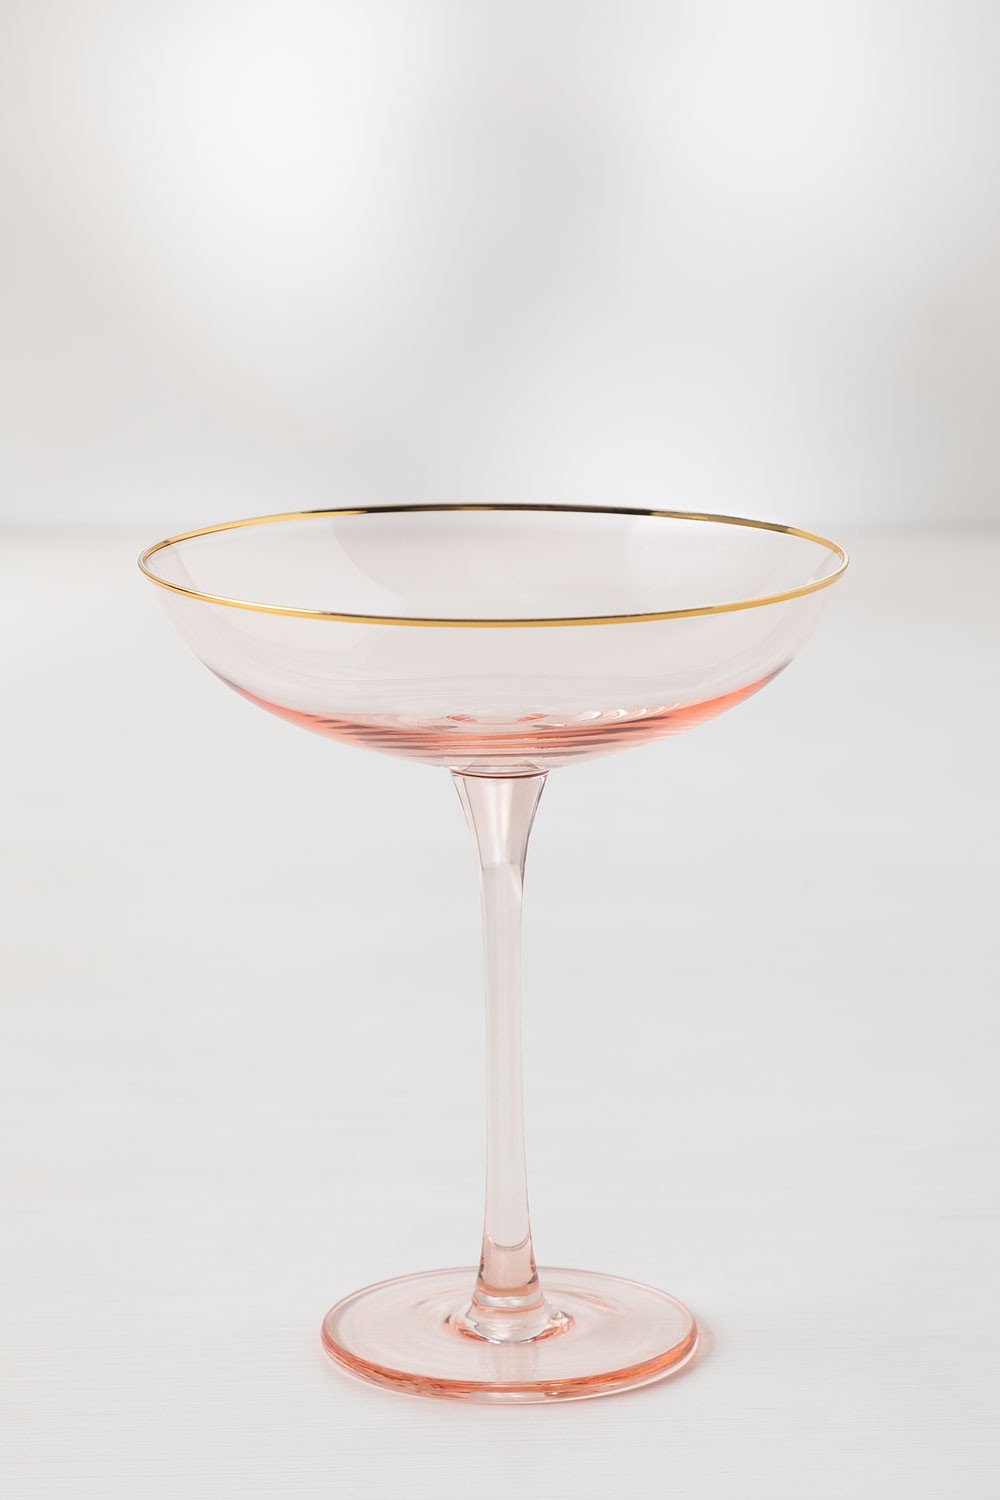 Coupes à champagne artisanales en verre strié Cami, 4 pièces